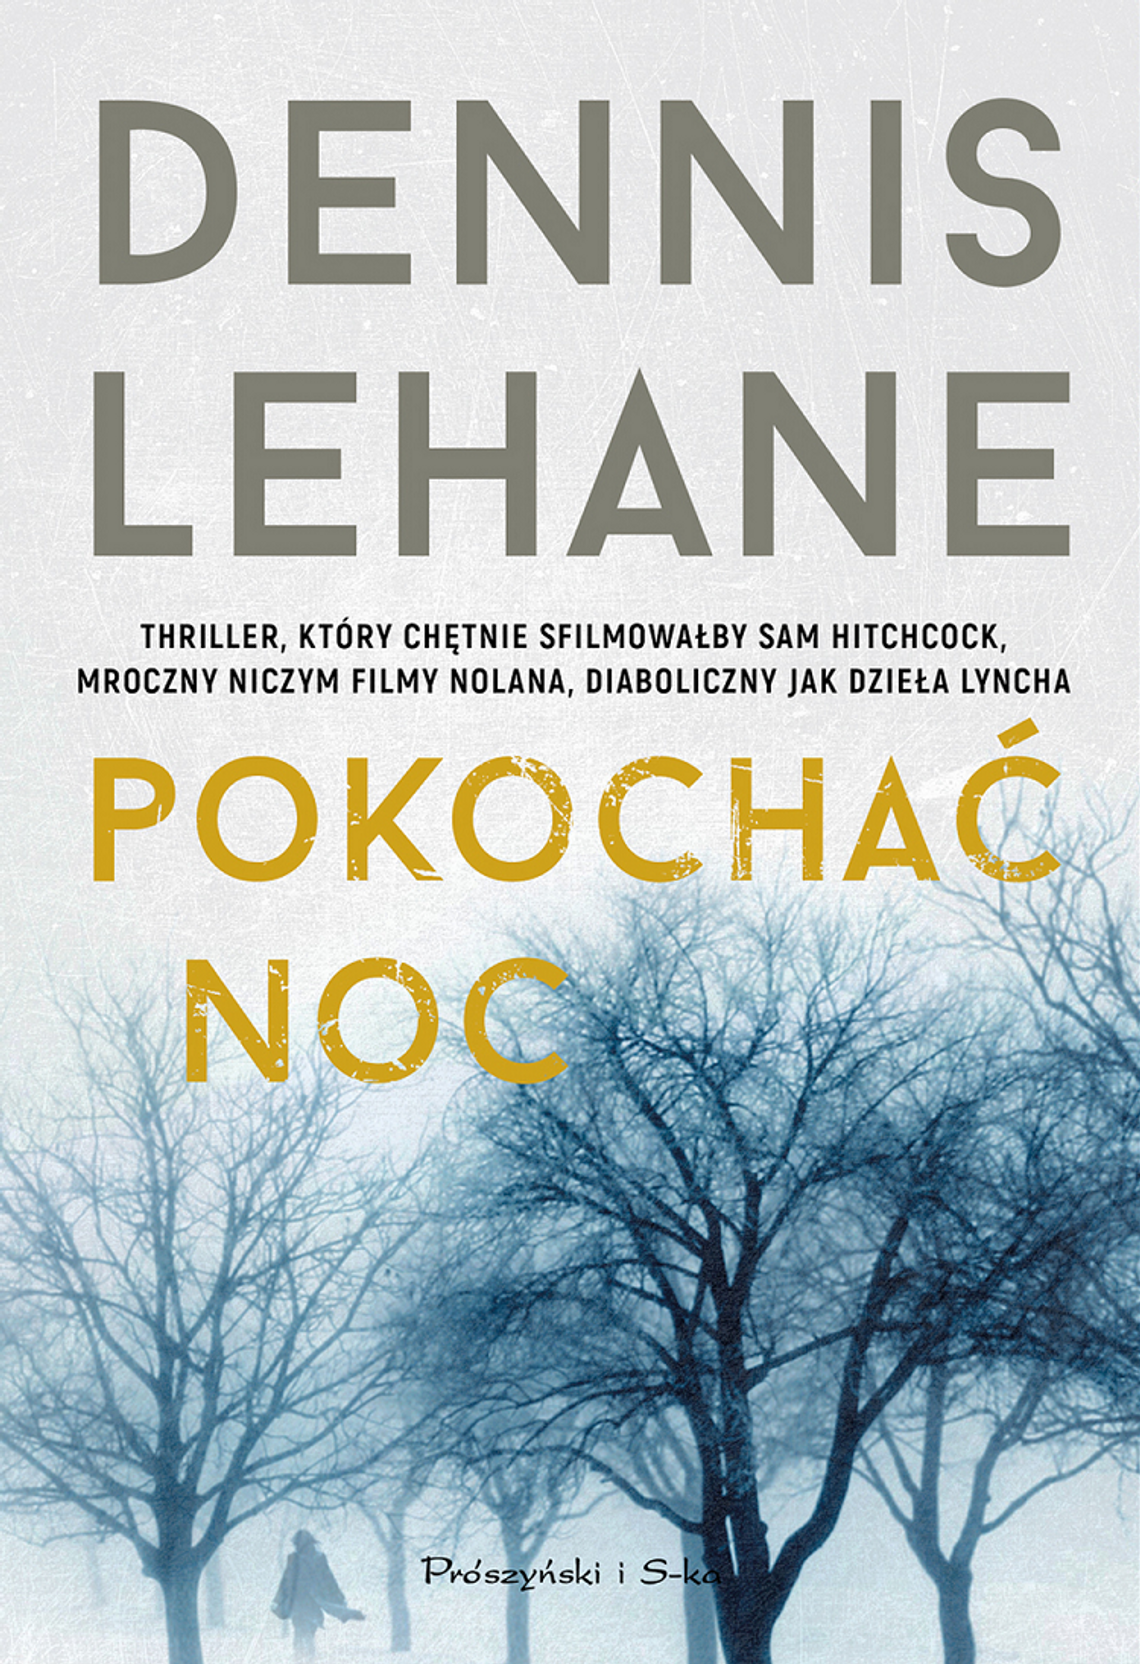 Dennis Lehane "Pokochać noc"; wyd. Prószyński i S-ka